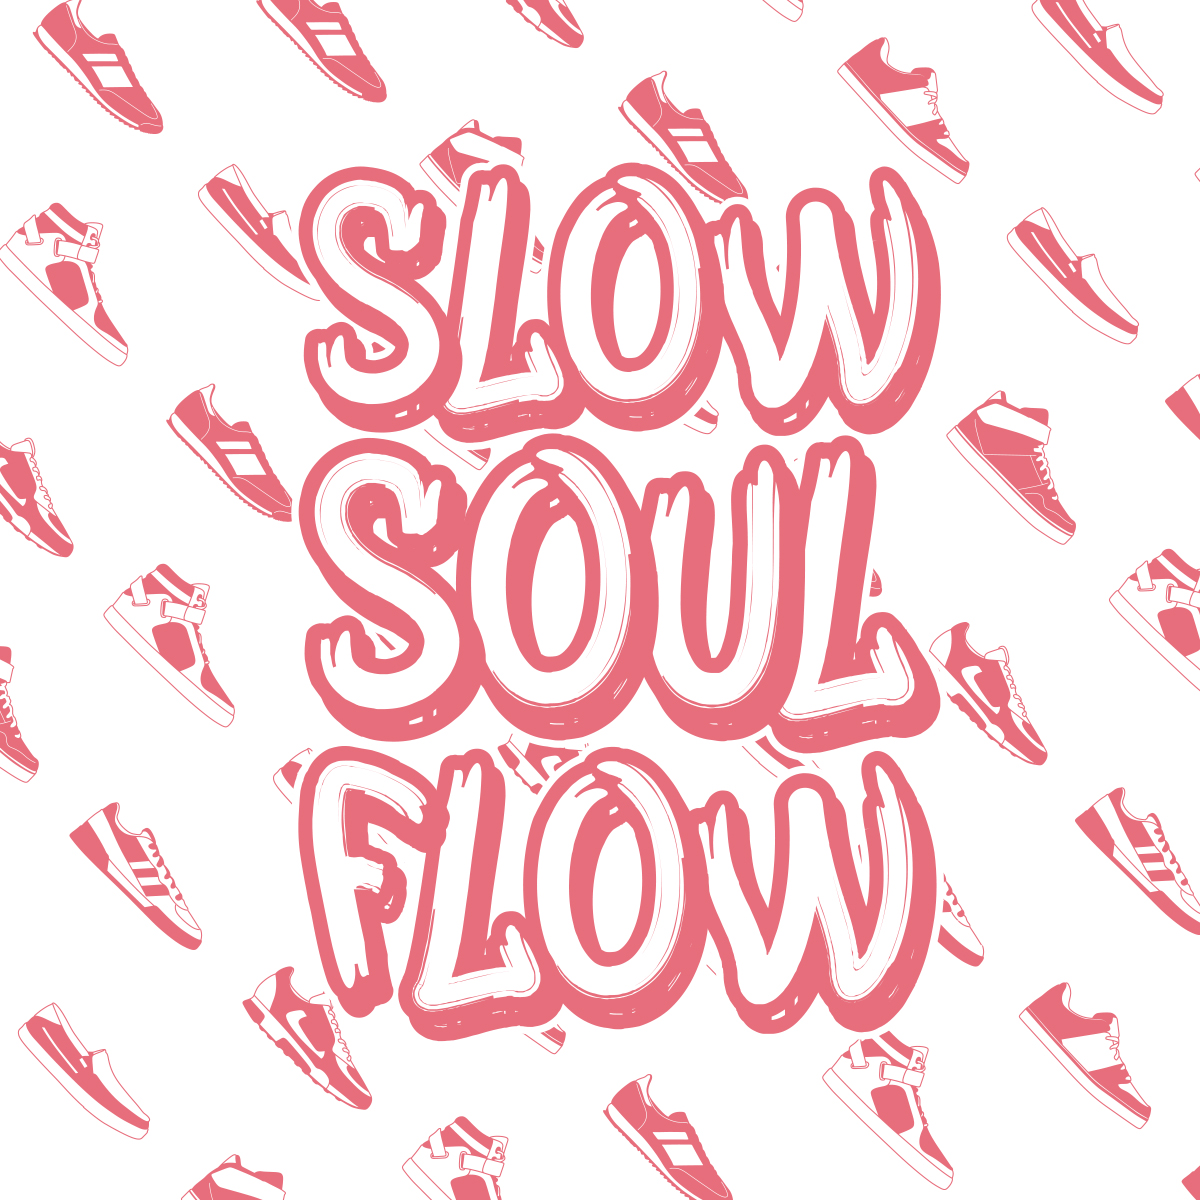 Shoes/SLOW SOUL FLOW EP 12"